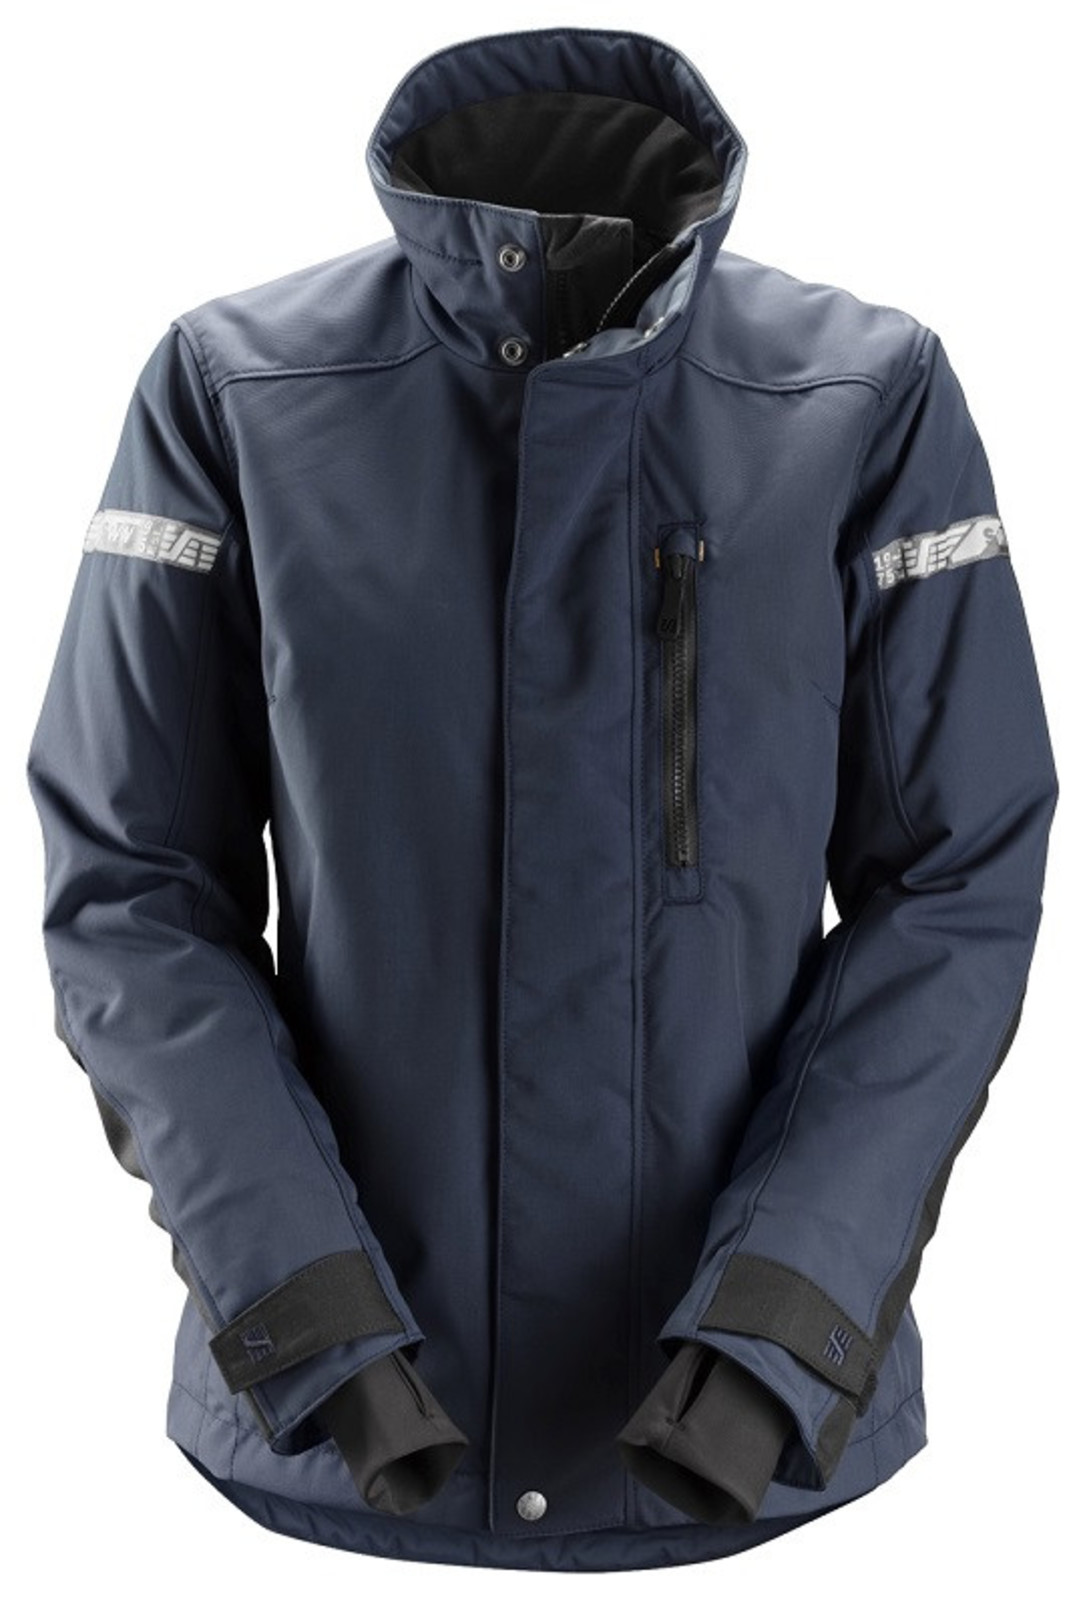 Dámska zimná bunda Snickers® AllroundWork 37.5® - veľkosť: XXL, farba: navy